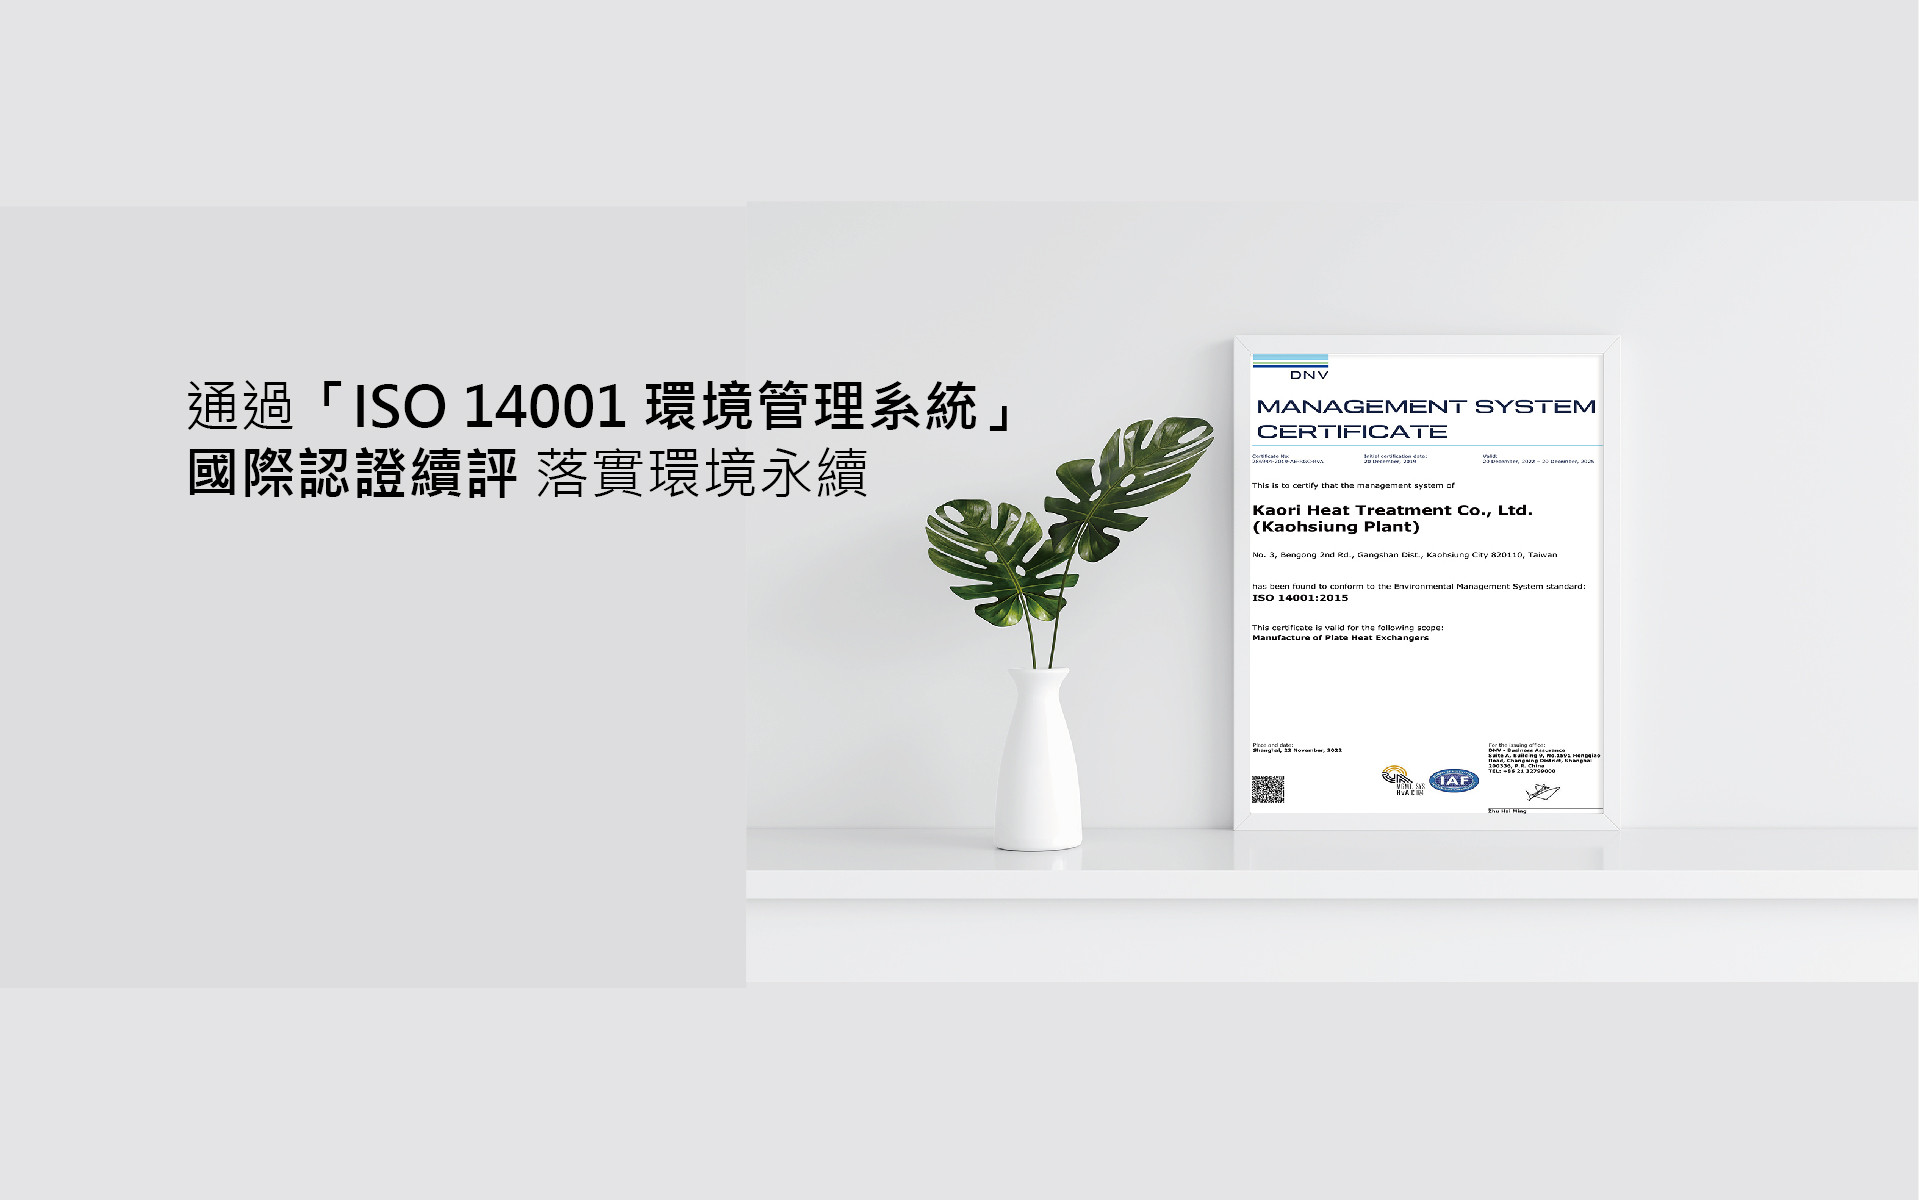  高雄廠通過「ISO 14001環境管理系統」國際認證續評 